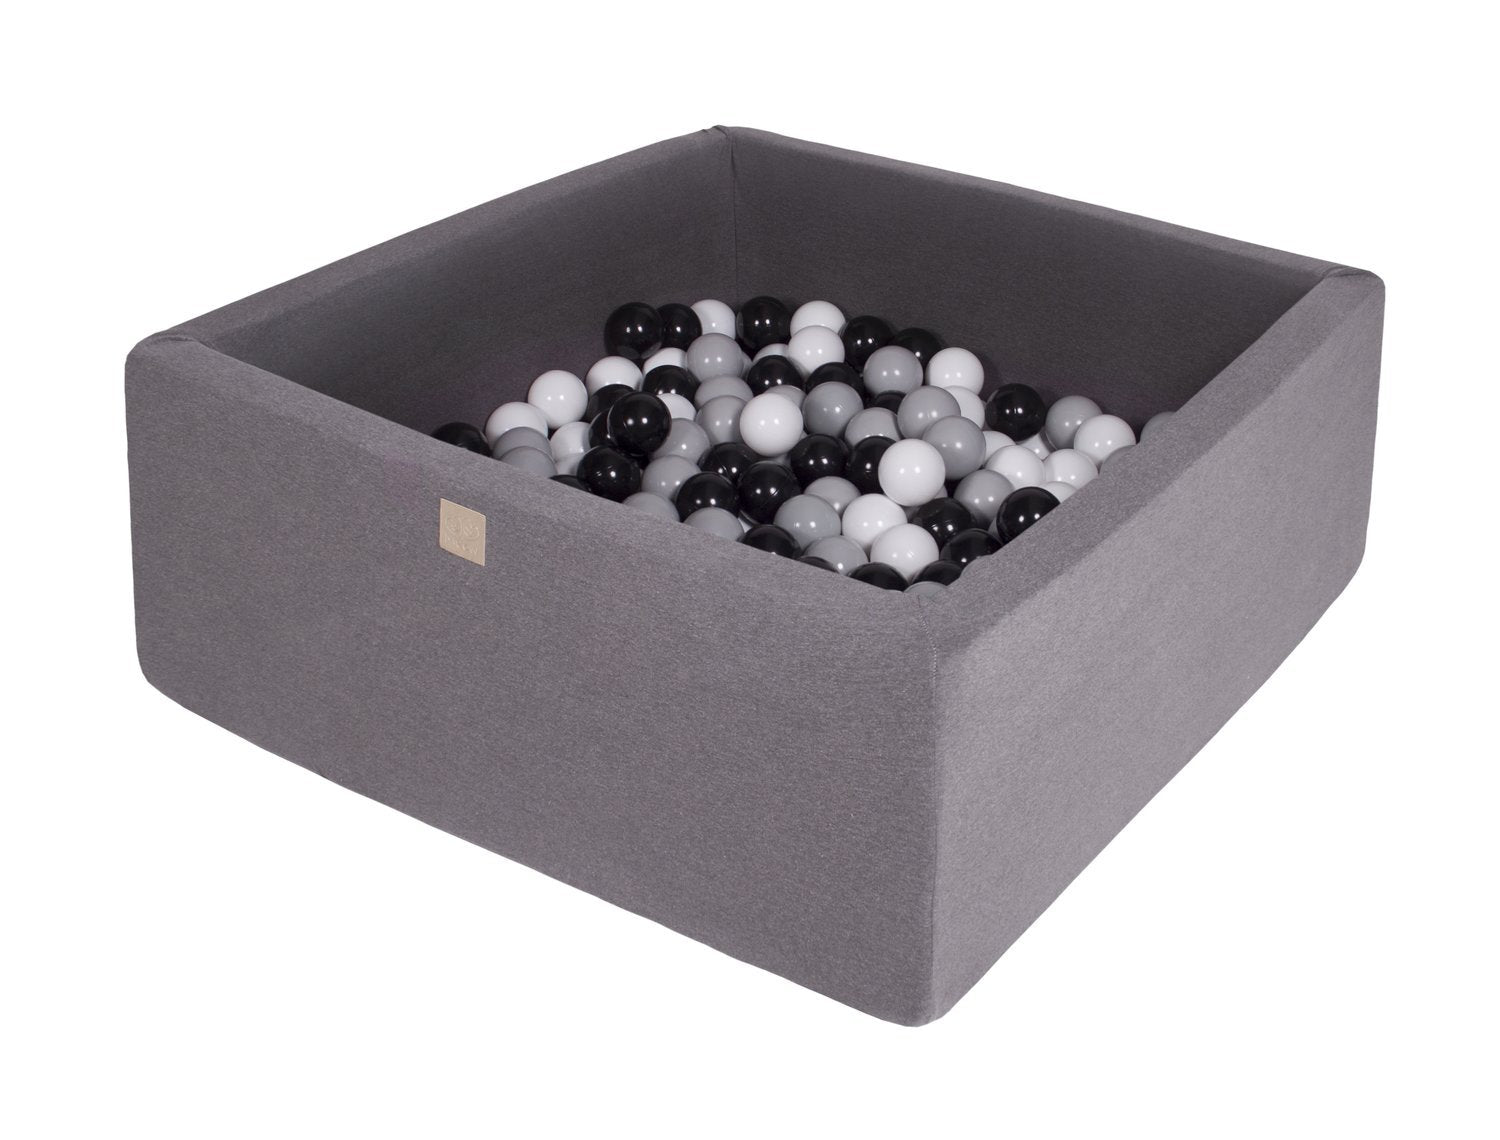 Vierkante ballenbak 90x90x40 - Donker grijs met Witte, Zwarte en Grijze ballen